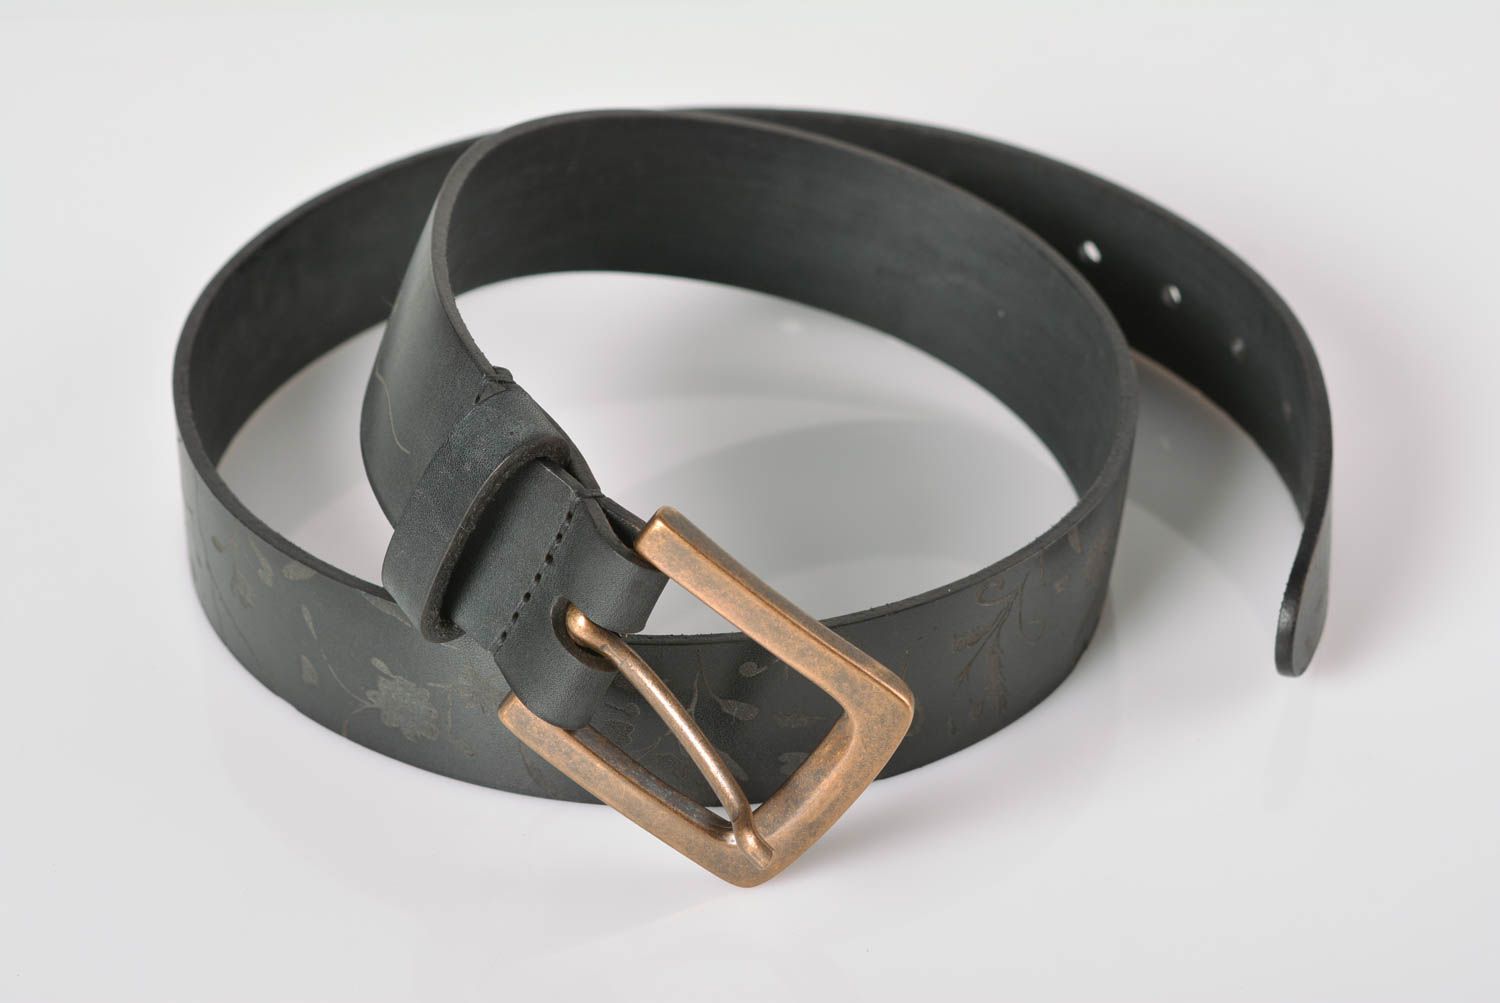 Black leather belt designer belts for men handmade leather goods gifts for him photo 1